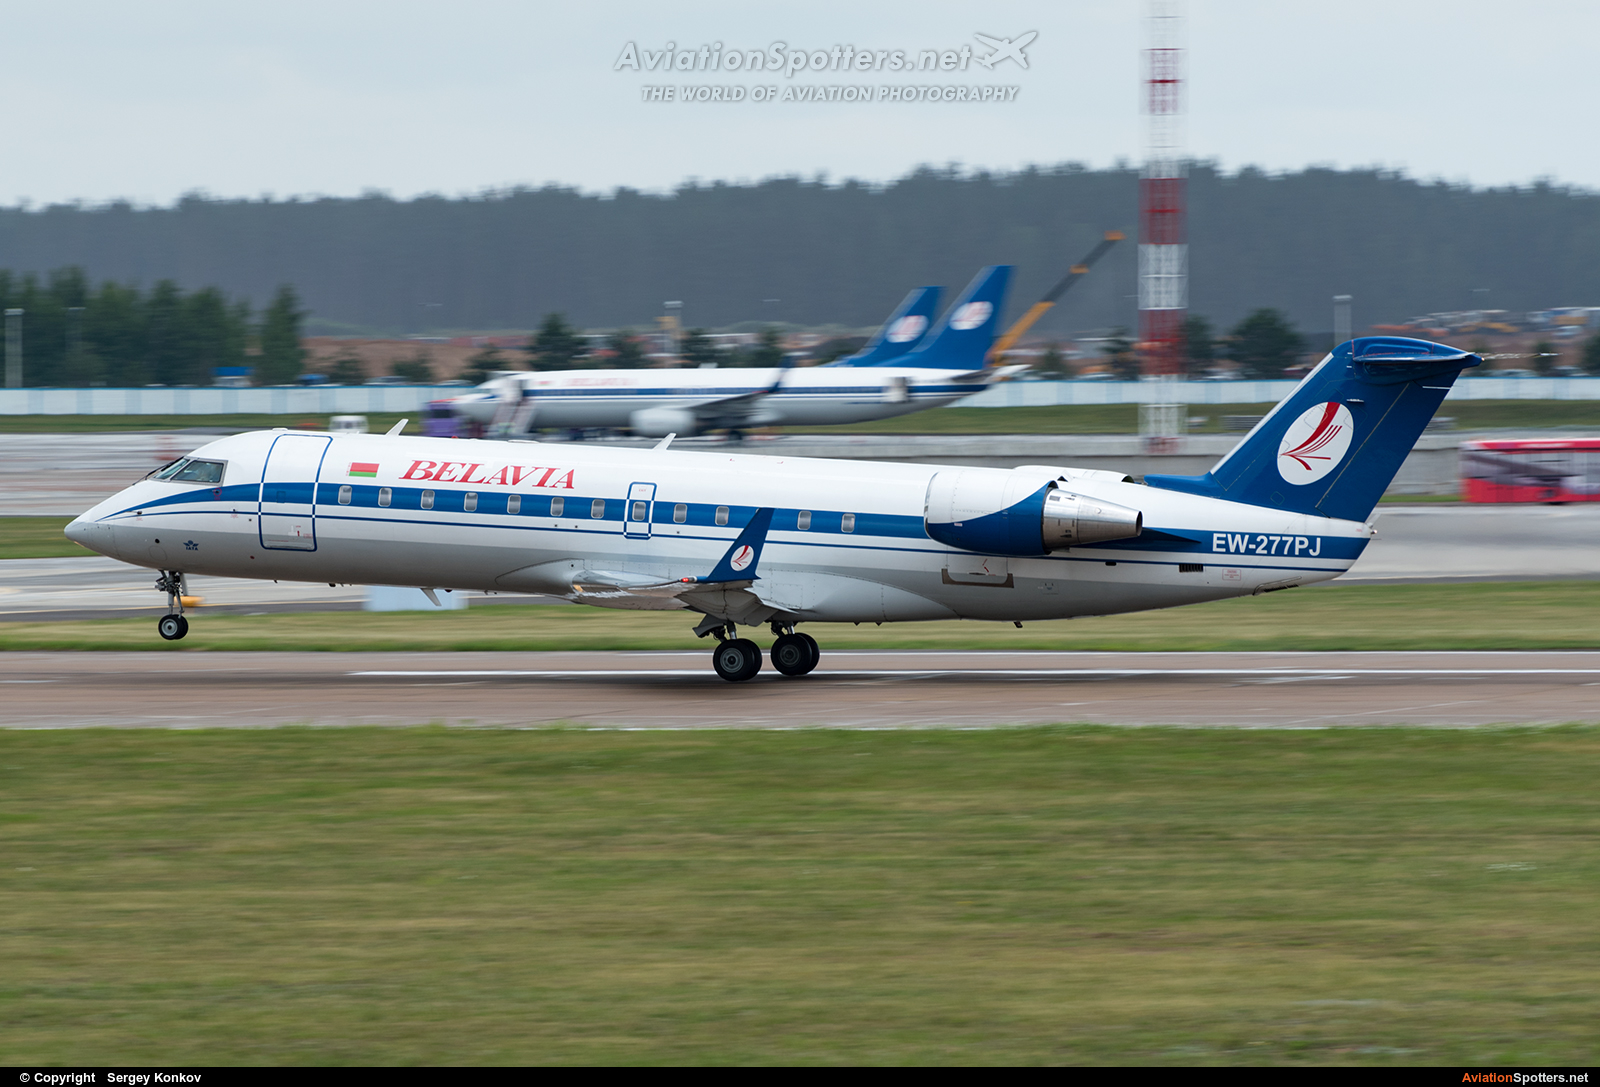 Belavia  -  CL-600 Regional Jet CRJ-200  (EW-277PJ) By Sergey Konkov (Сергей Коньков)